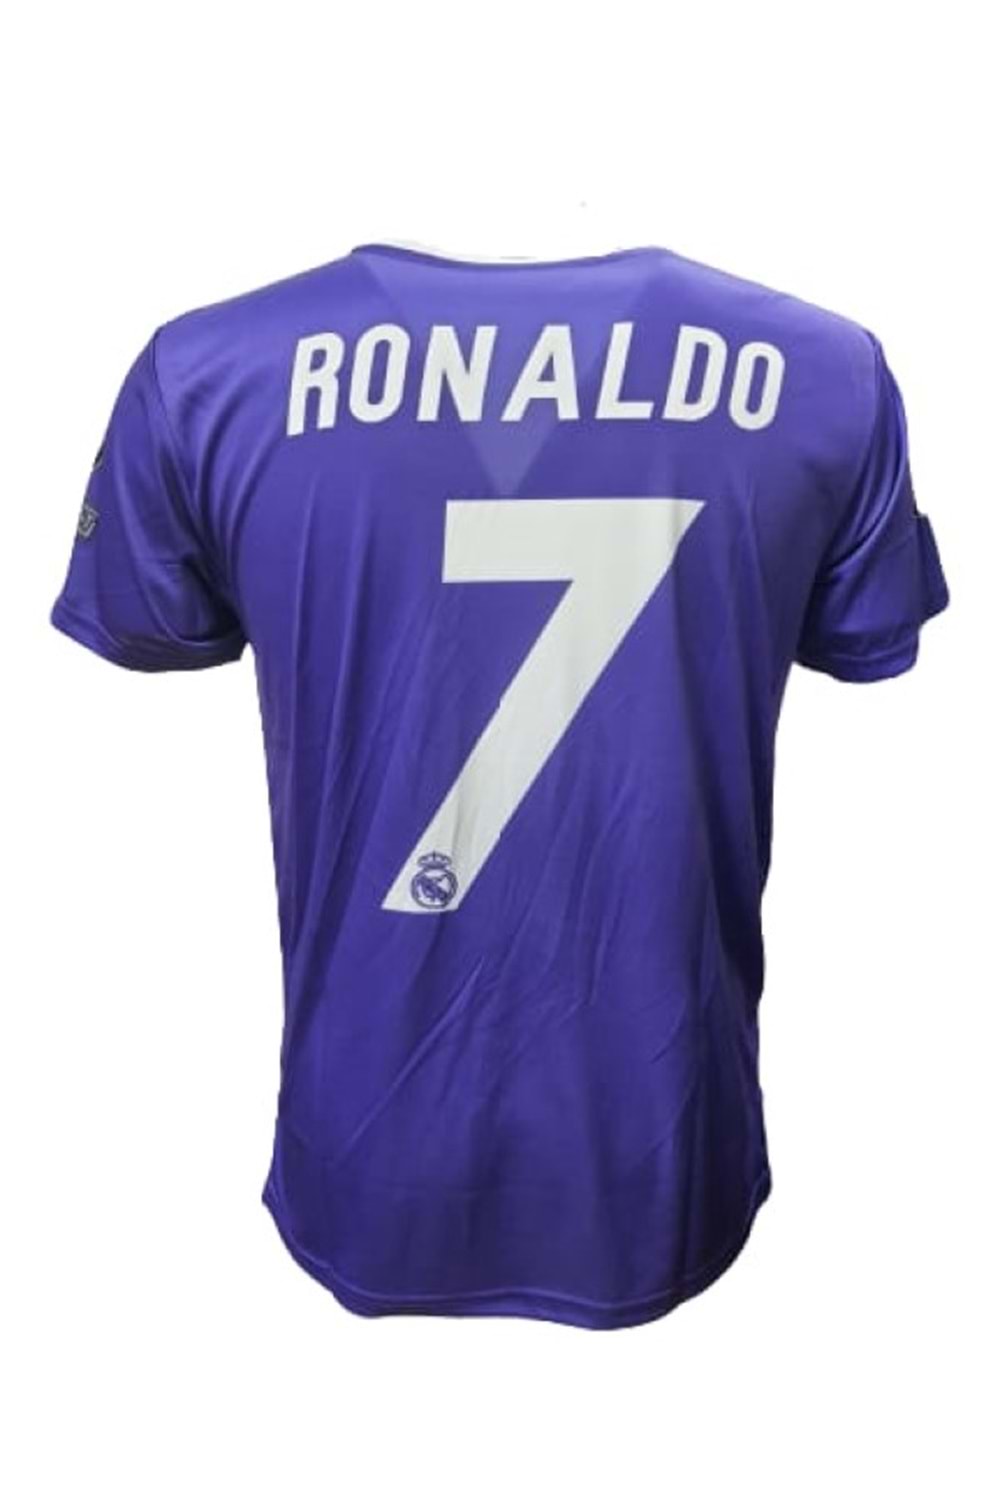 Real Madrid R01064 Ronaldo Nostalji Mor Forması - R01064 - Mor